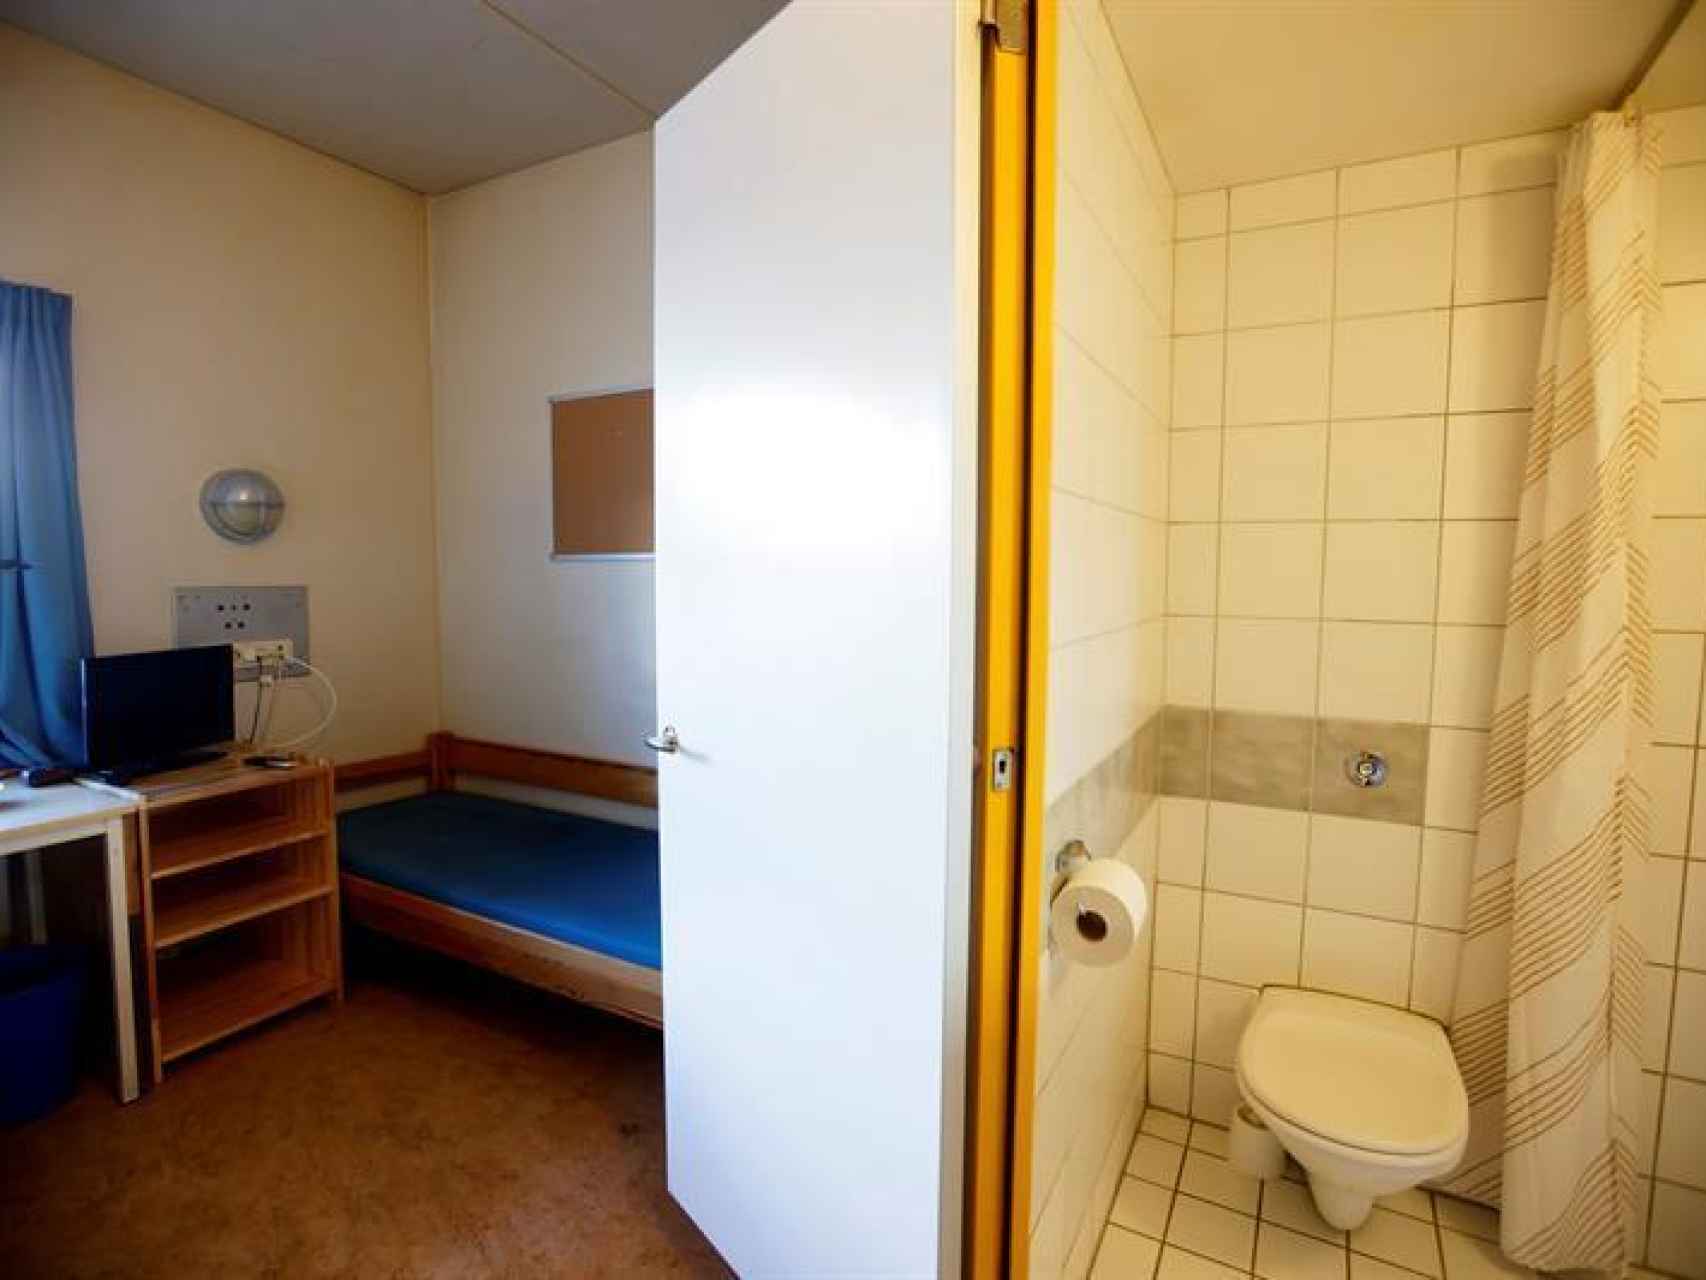 Habitación estándar en el ala de máxima seguridad donde está encarcelado Breivik.